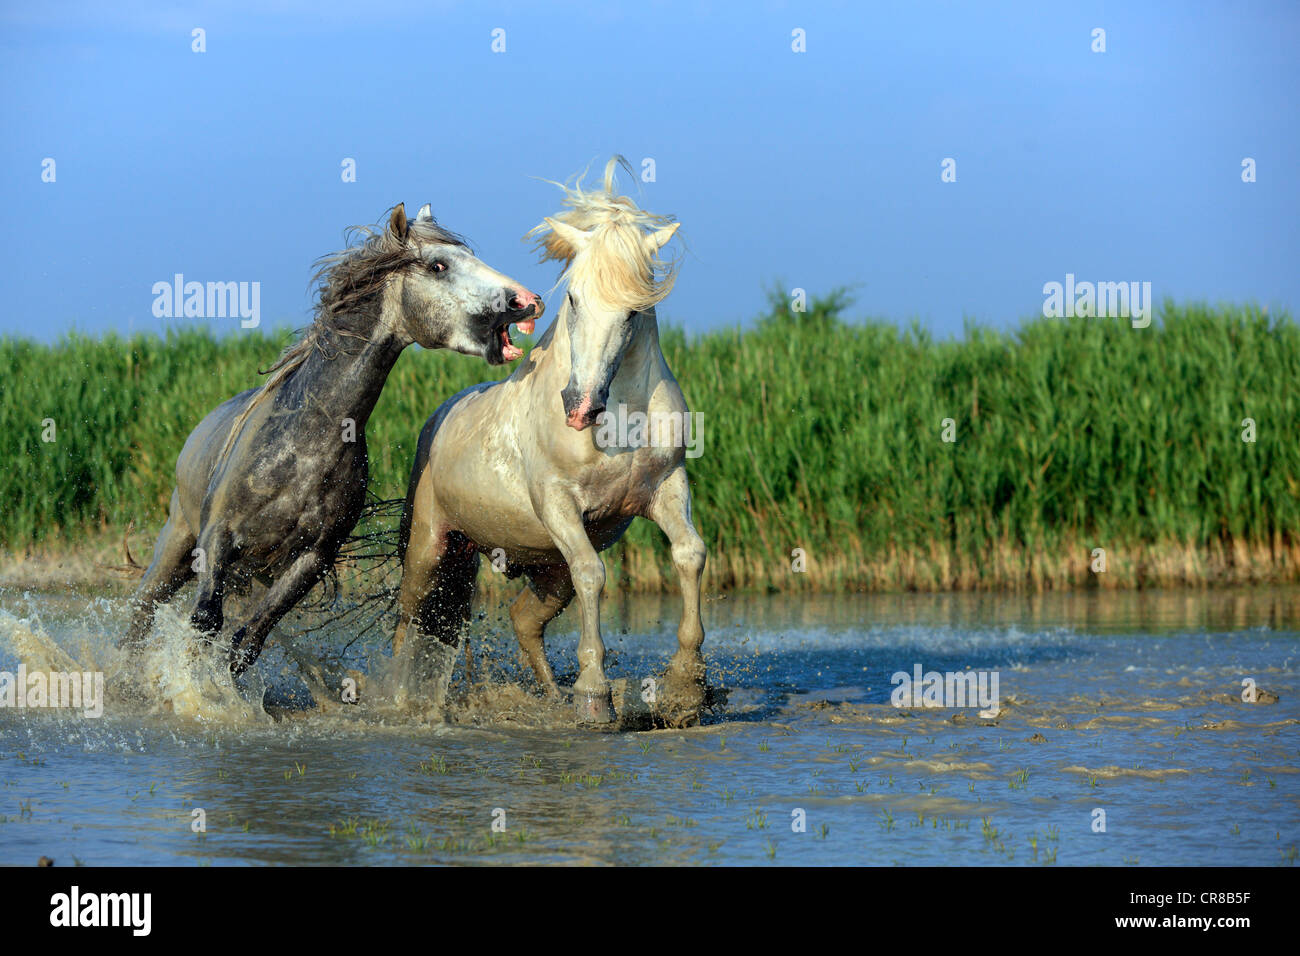 Chevaux Camargue (Equus caballus), deux étalons les combats dans l'eau, Saintes Maries-de-la-Mer, Camargue, France, Europe Banque D'Images